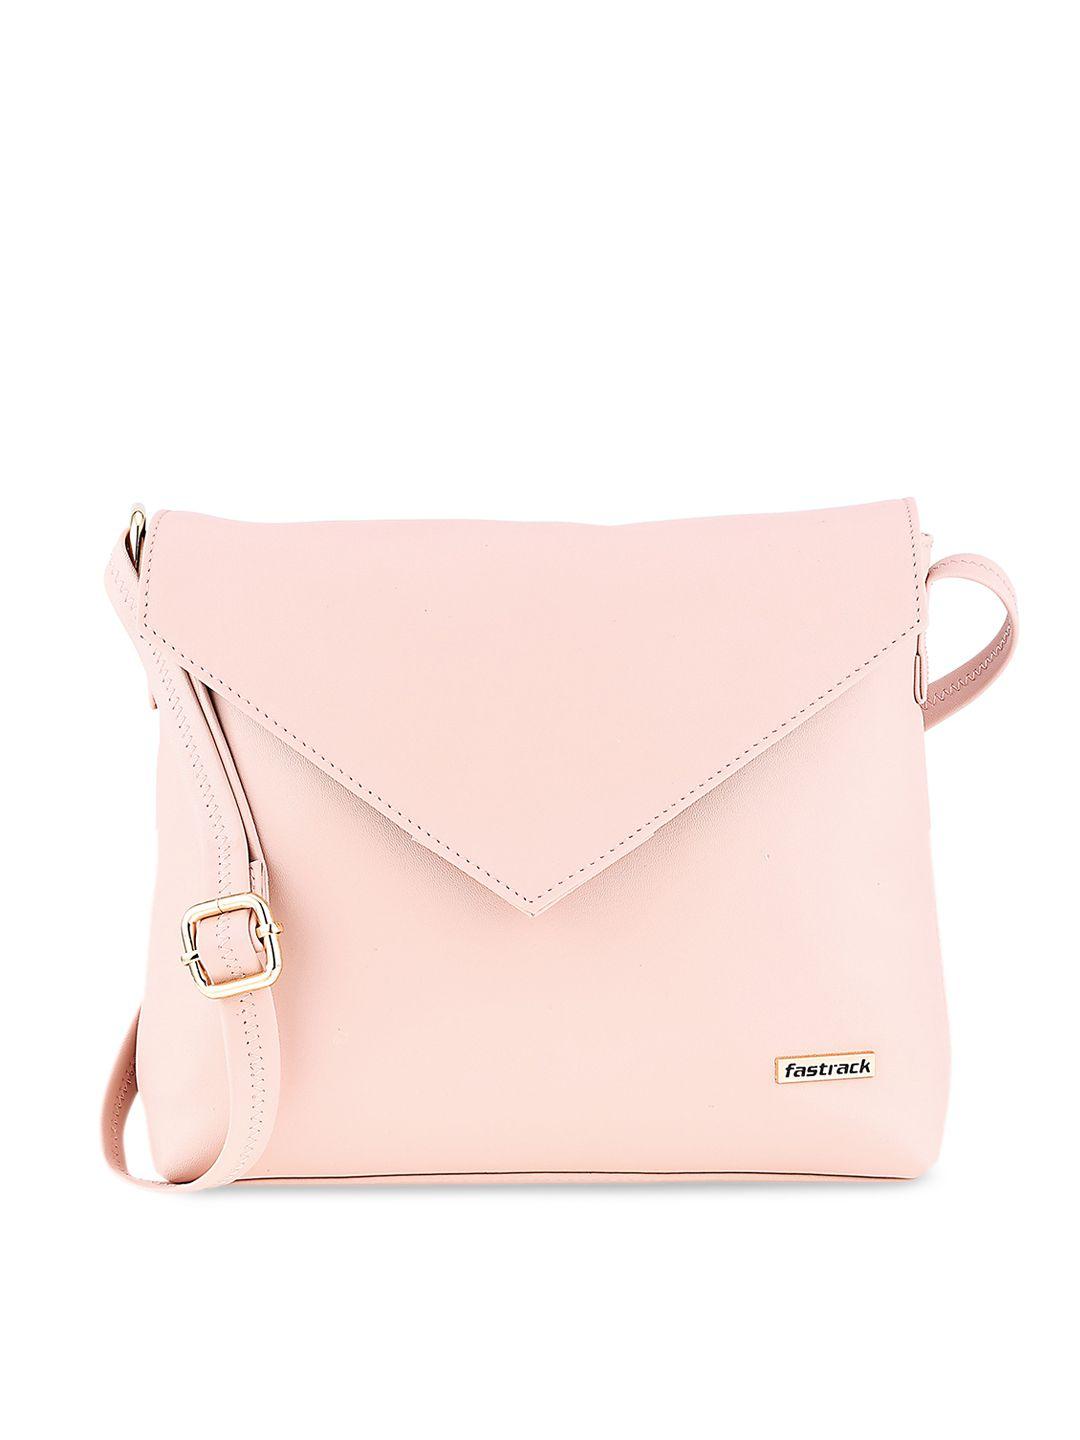 fastrack pink pu structured sling bag